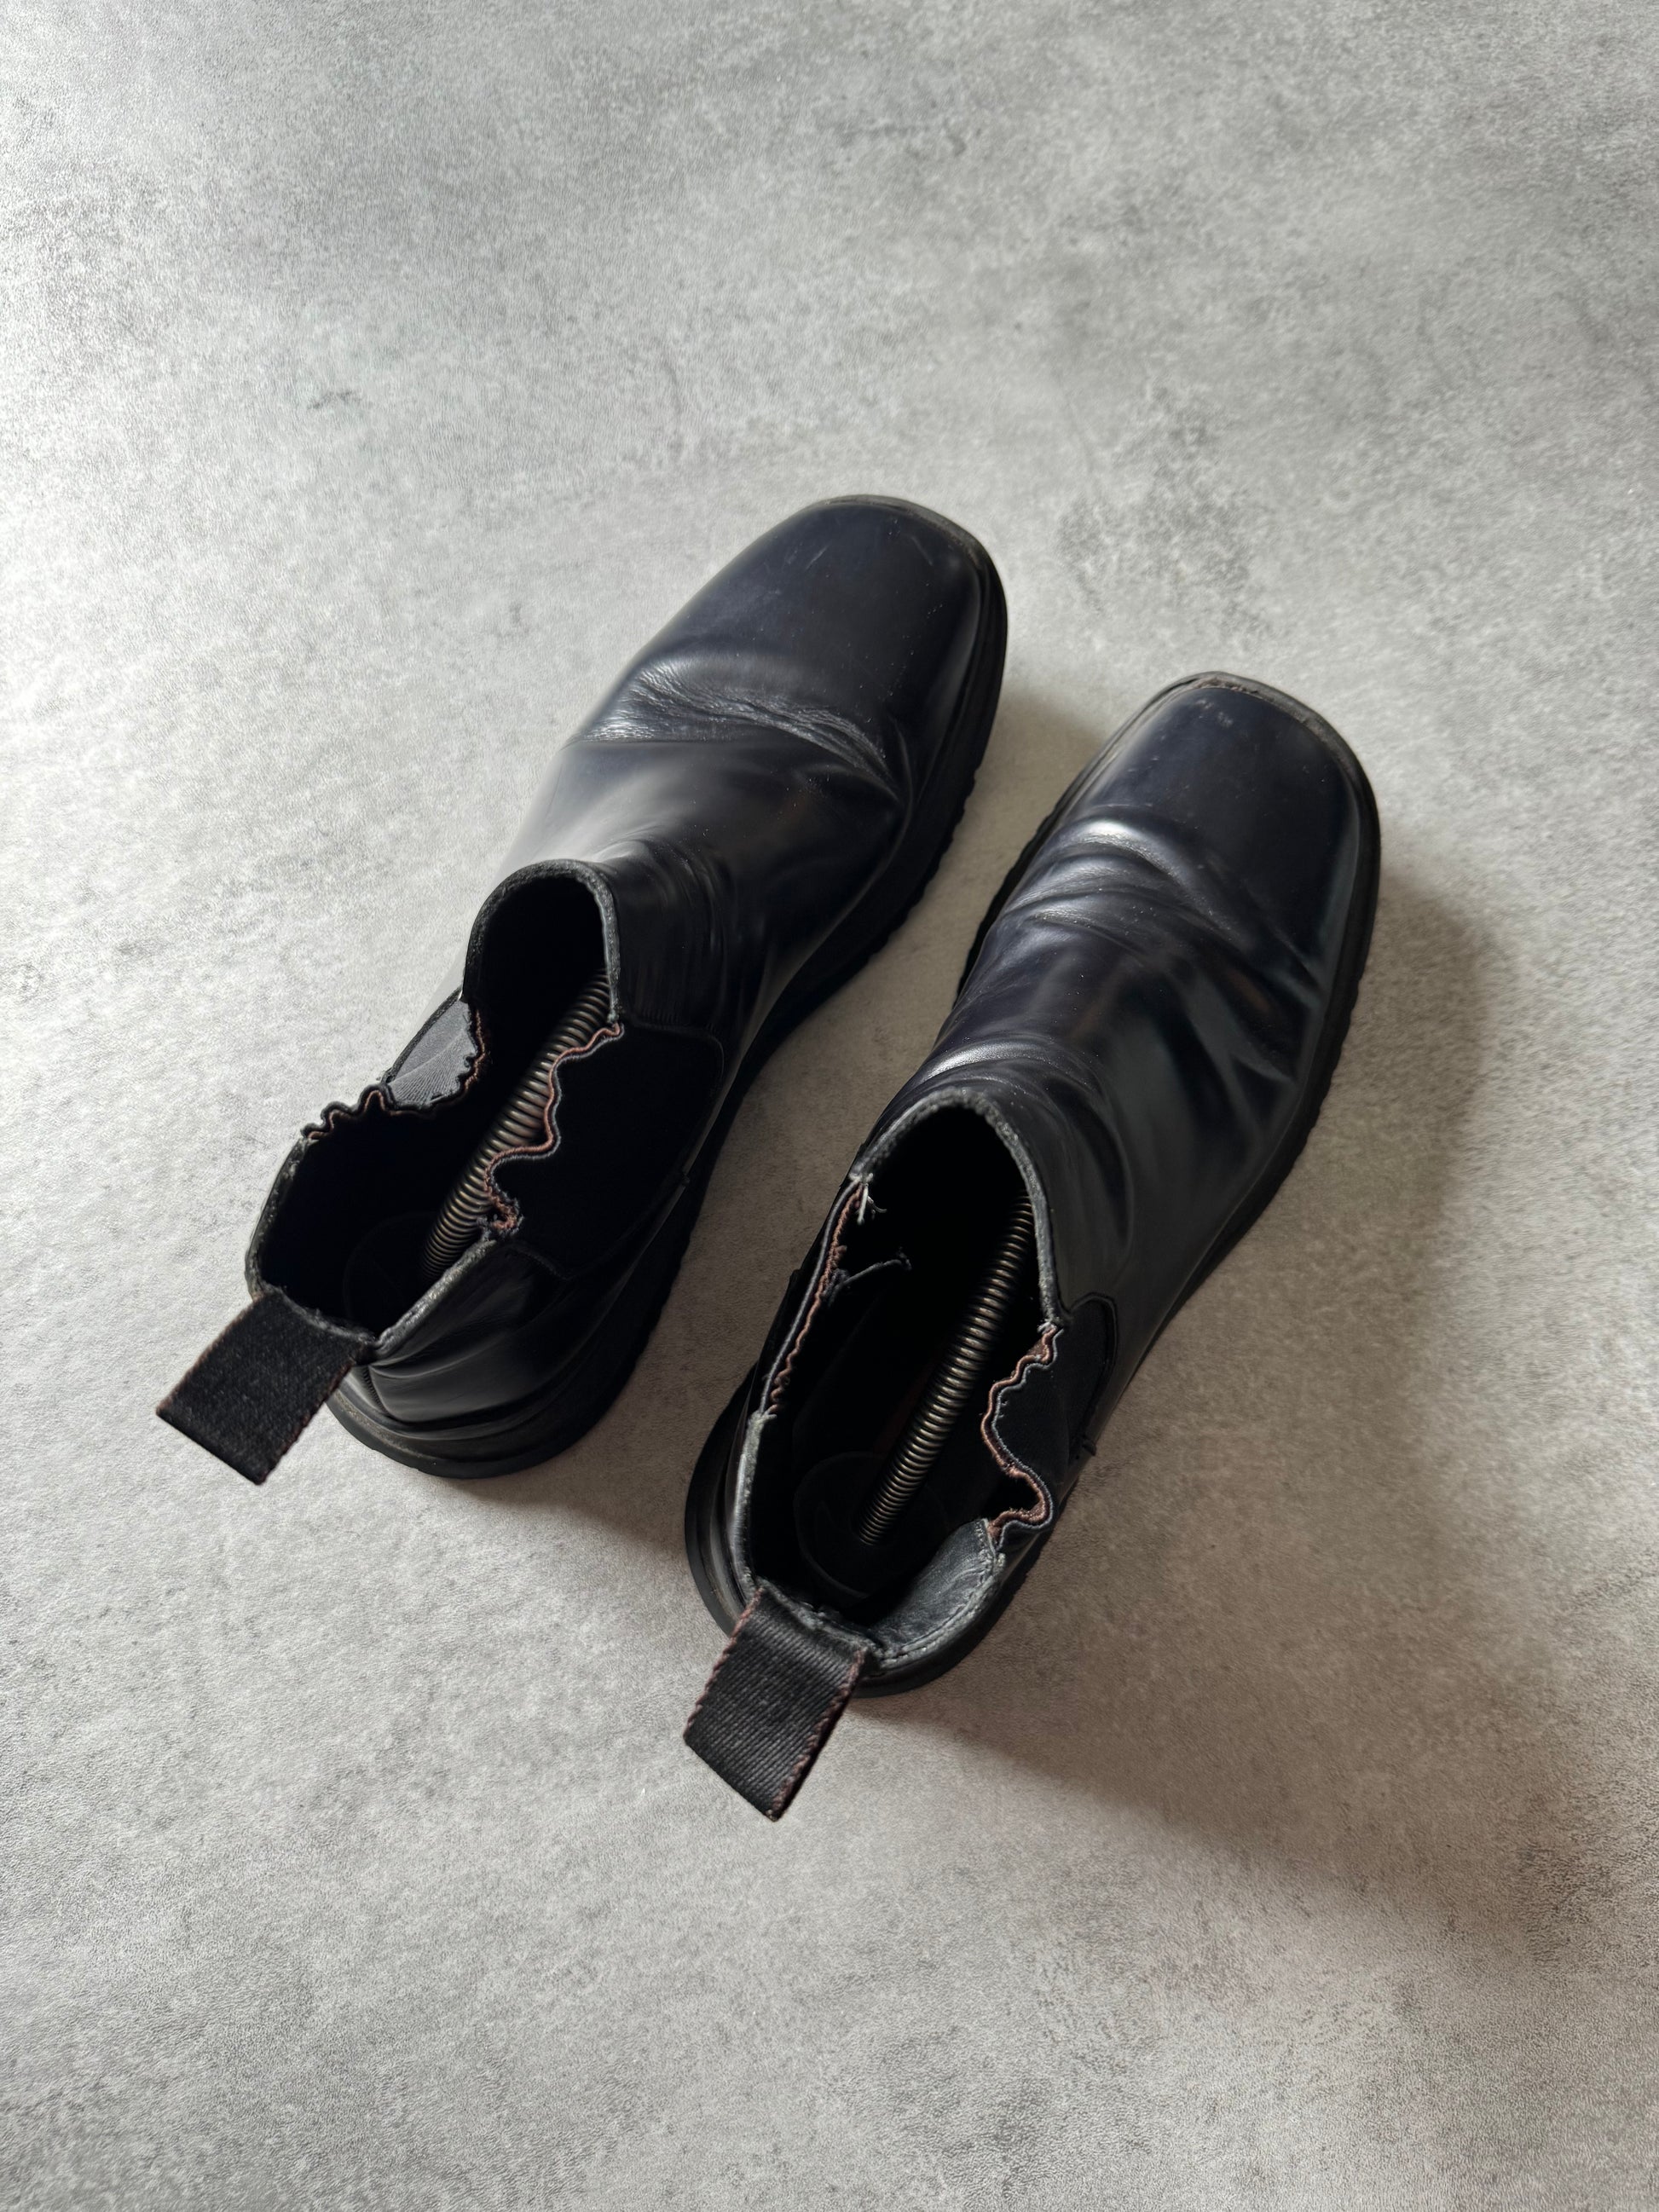 FW1999 Prada Navy Leather Boots  (40) - 5